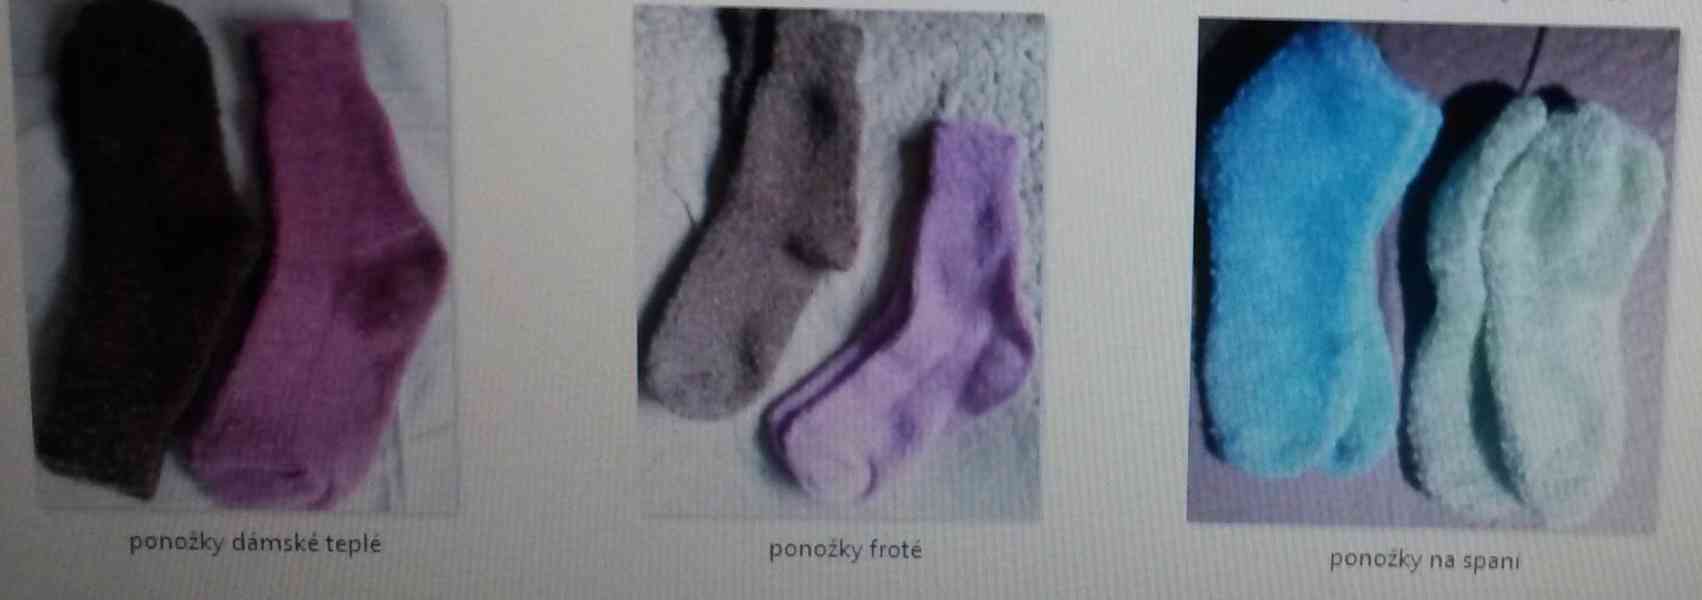 teplé dámské ponožky